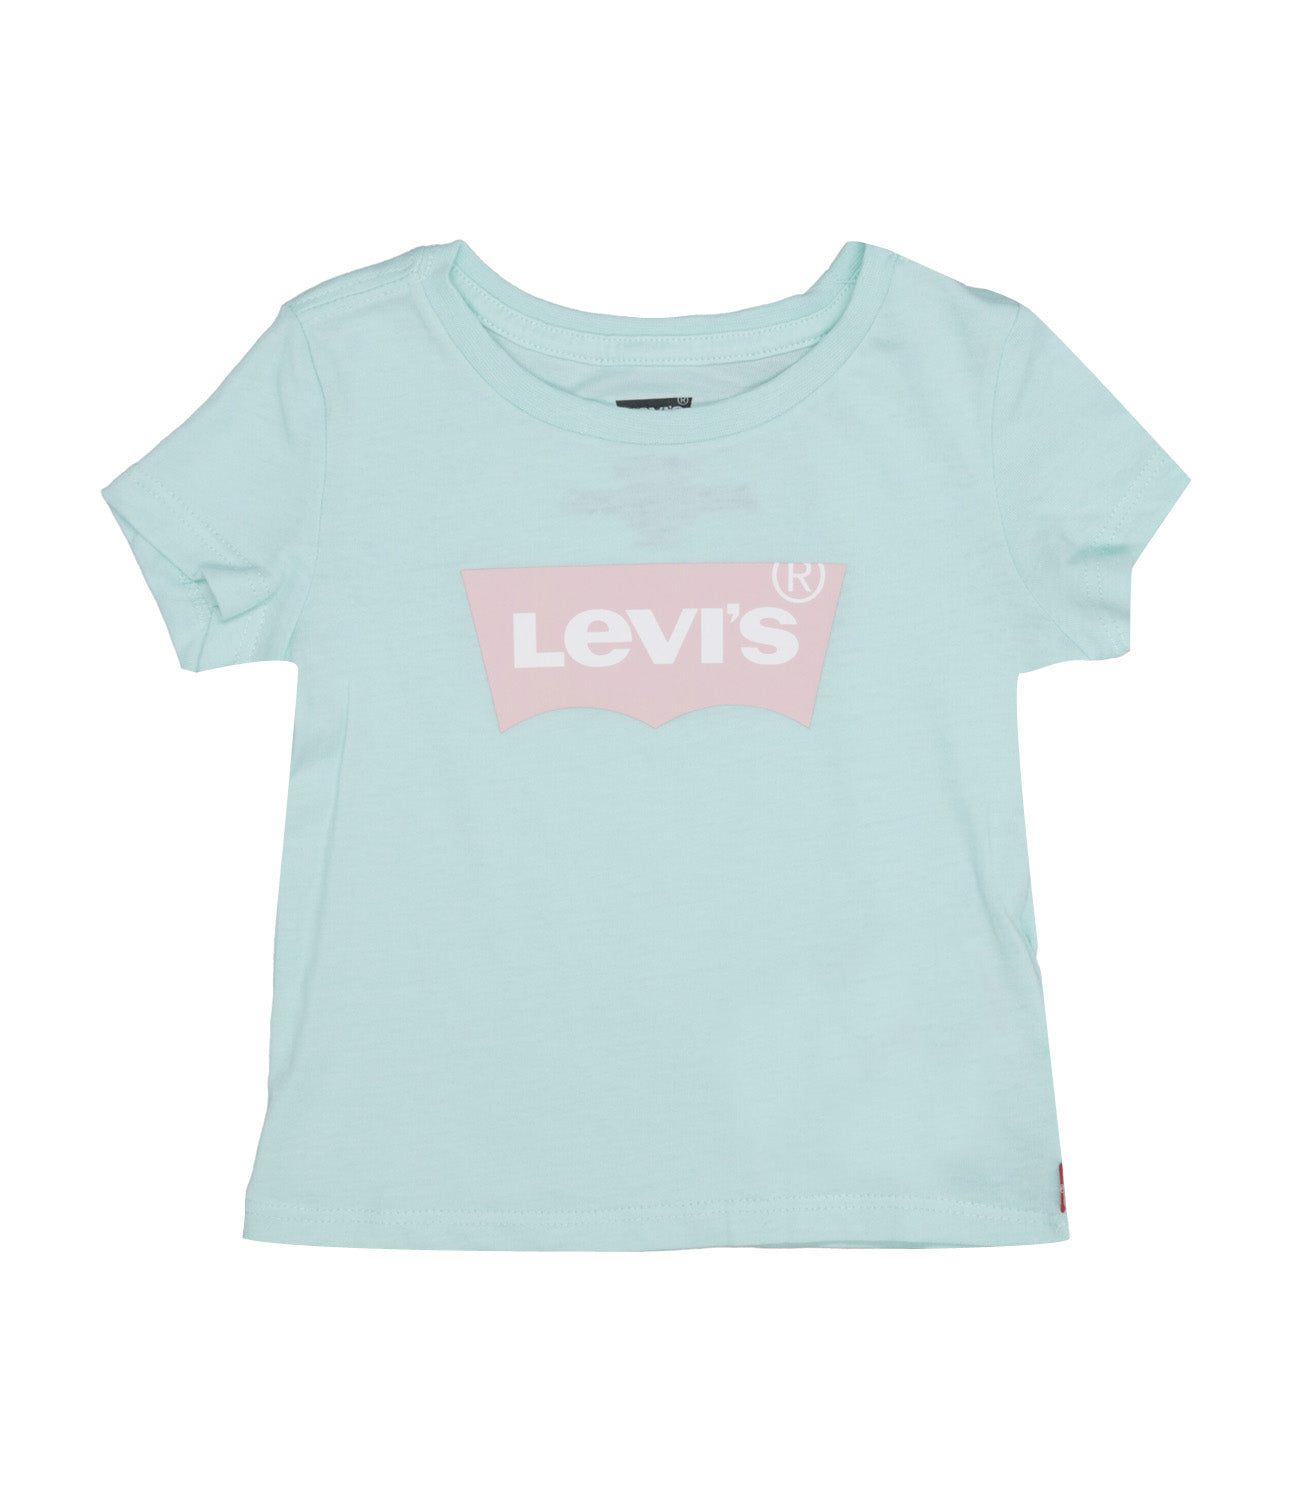 Levis Kids | Light Blue and Pink T-Shirt